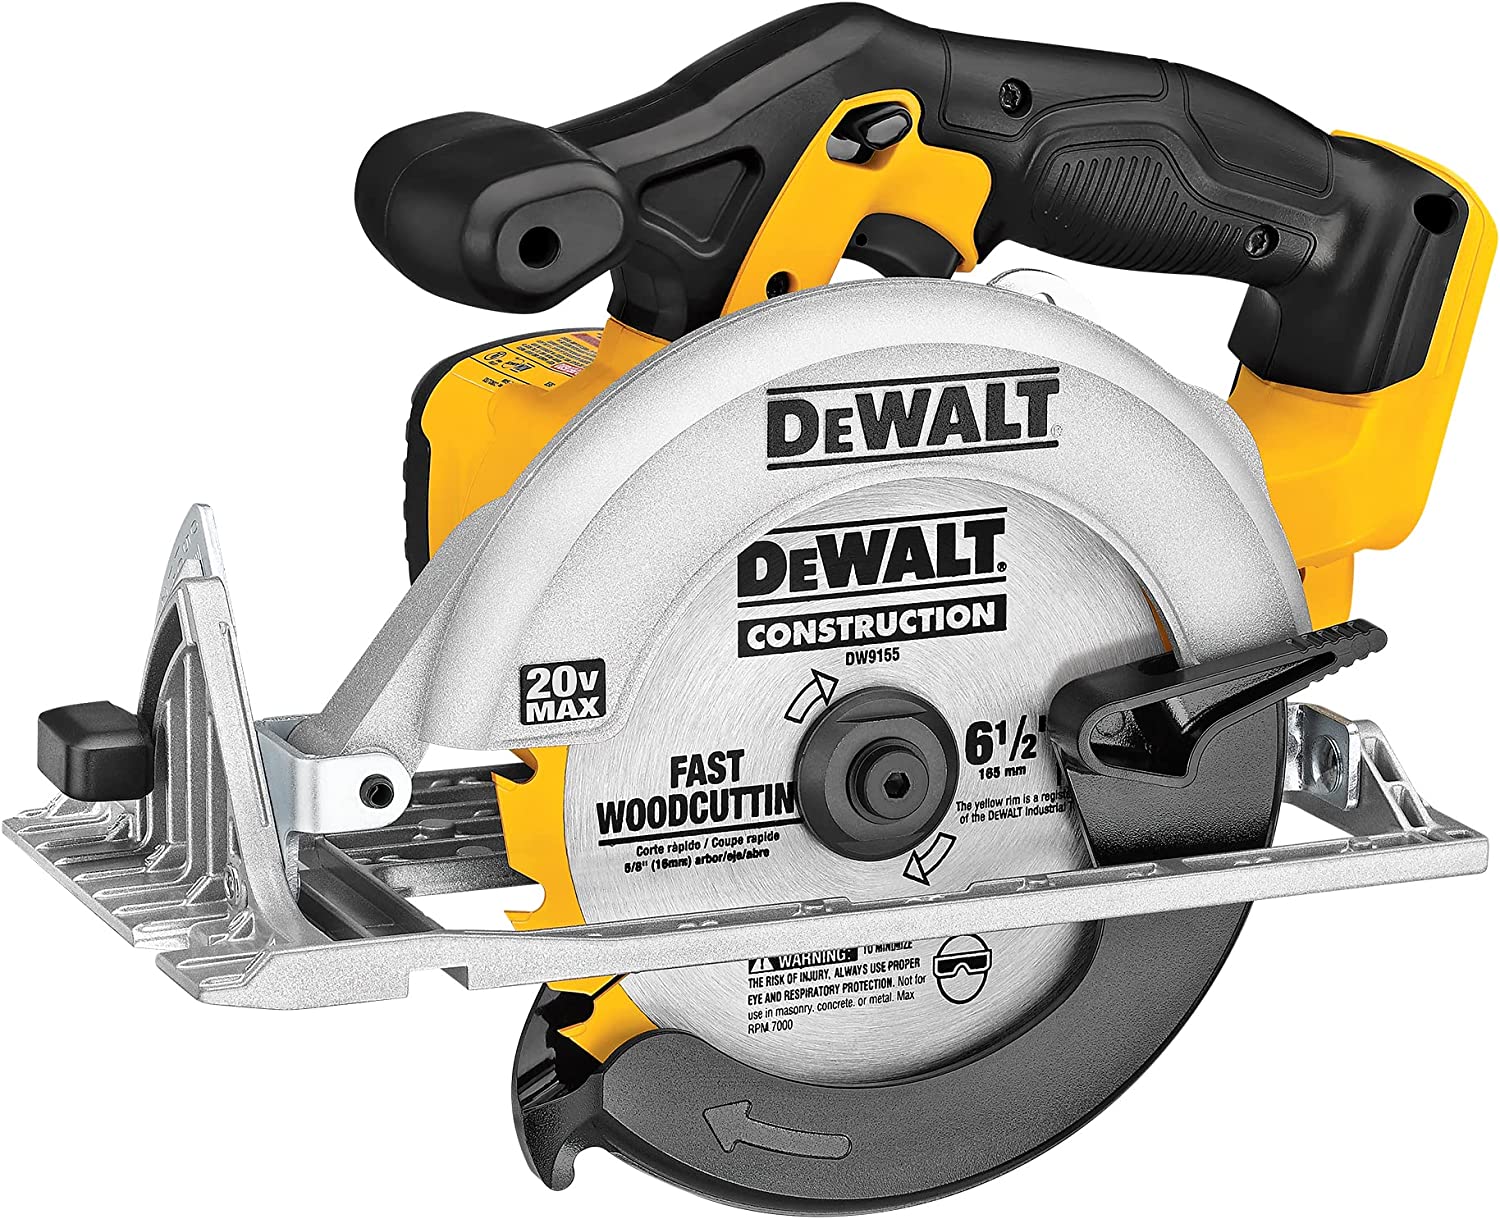 Dewalt 6-1/2 20V MAX Circular Saw - Tool Only $99